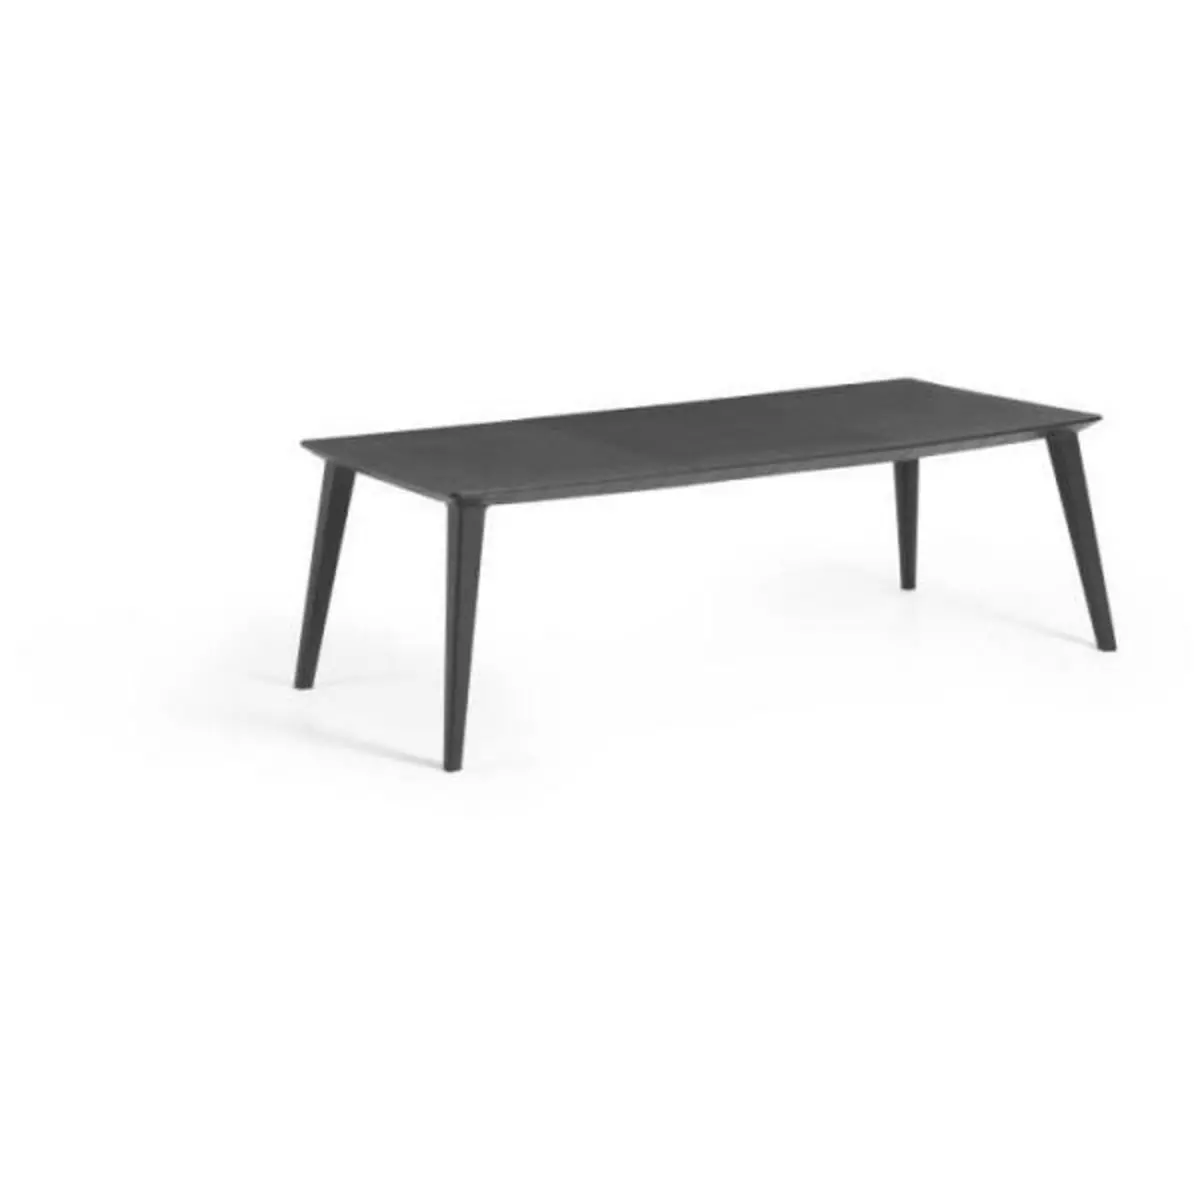 ALLIBERT by KETER Table de jardin - rectangulaire - gris graphite - en résine - 8 a 10 personnes - Lima - Allibert by KETER